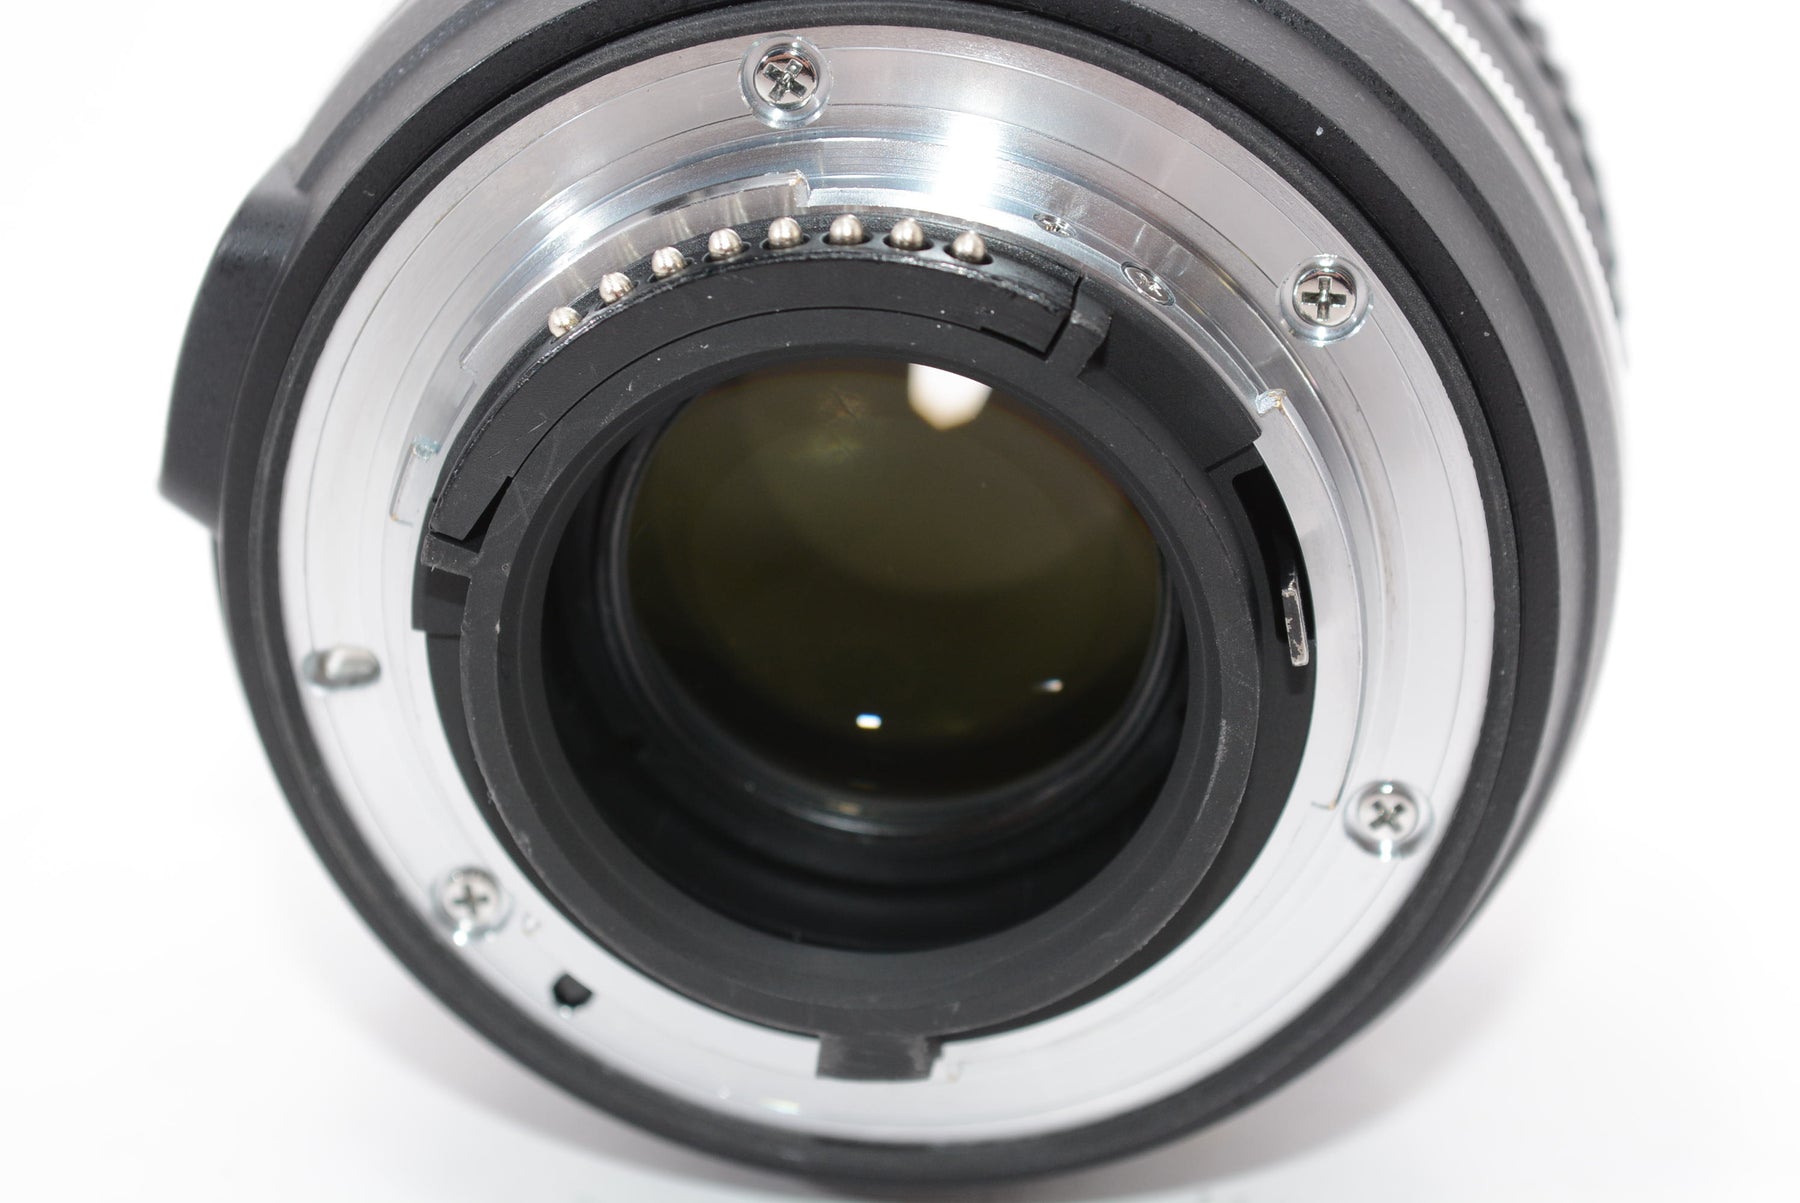 【外観特上級】Nikon 単焦点レンズ AF-S NIKKOR 50mm f/1.8G(Special Edition) フルサイズ対応